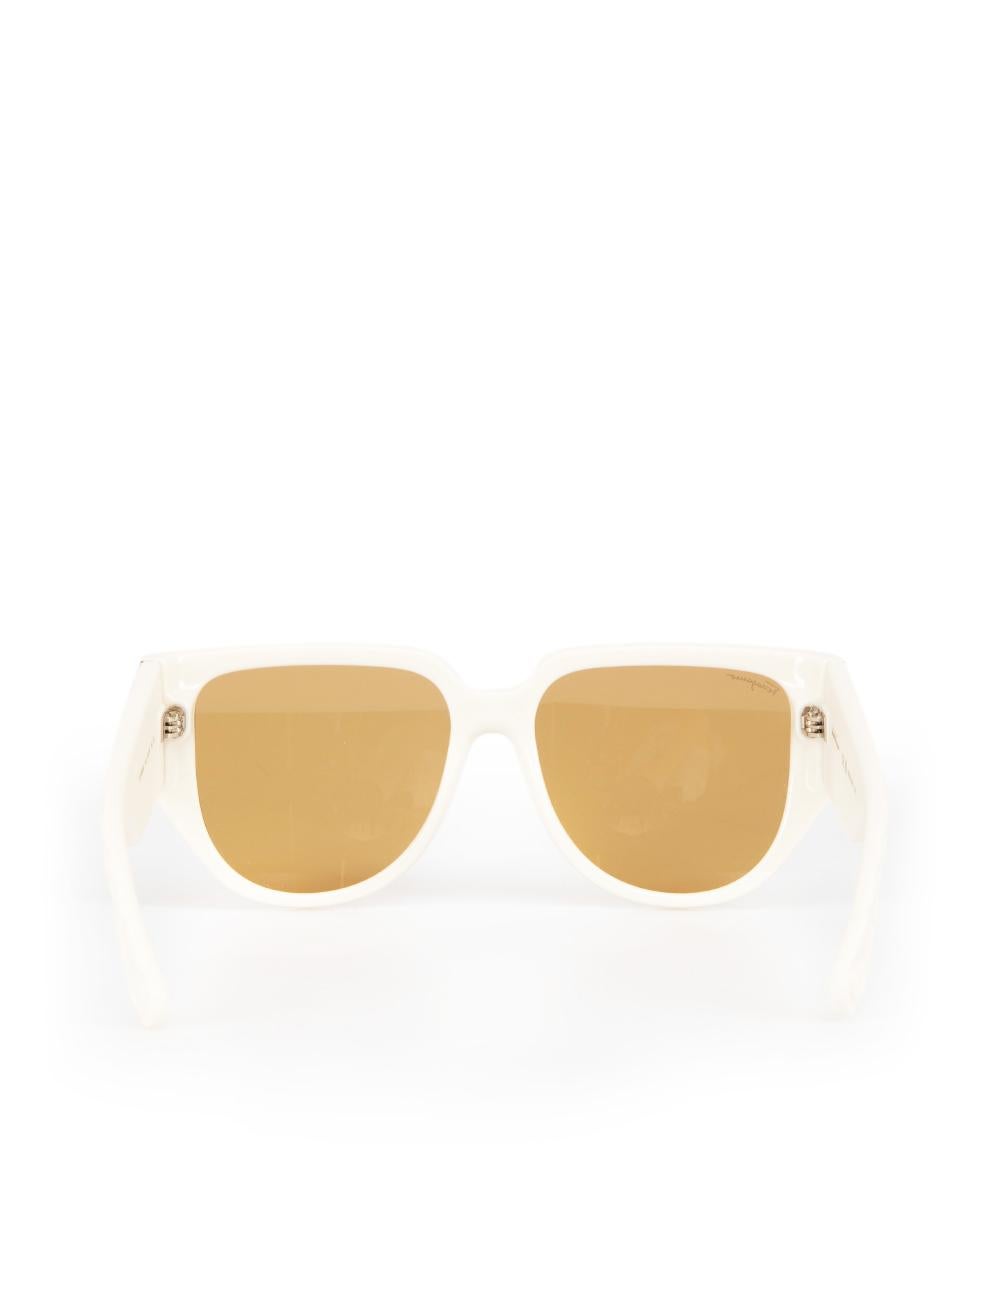 Salvatore Ferragamo Ivory Browline Sunglasses In New Condition For Sale In London, GB